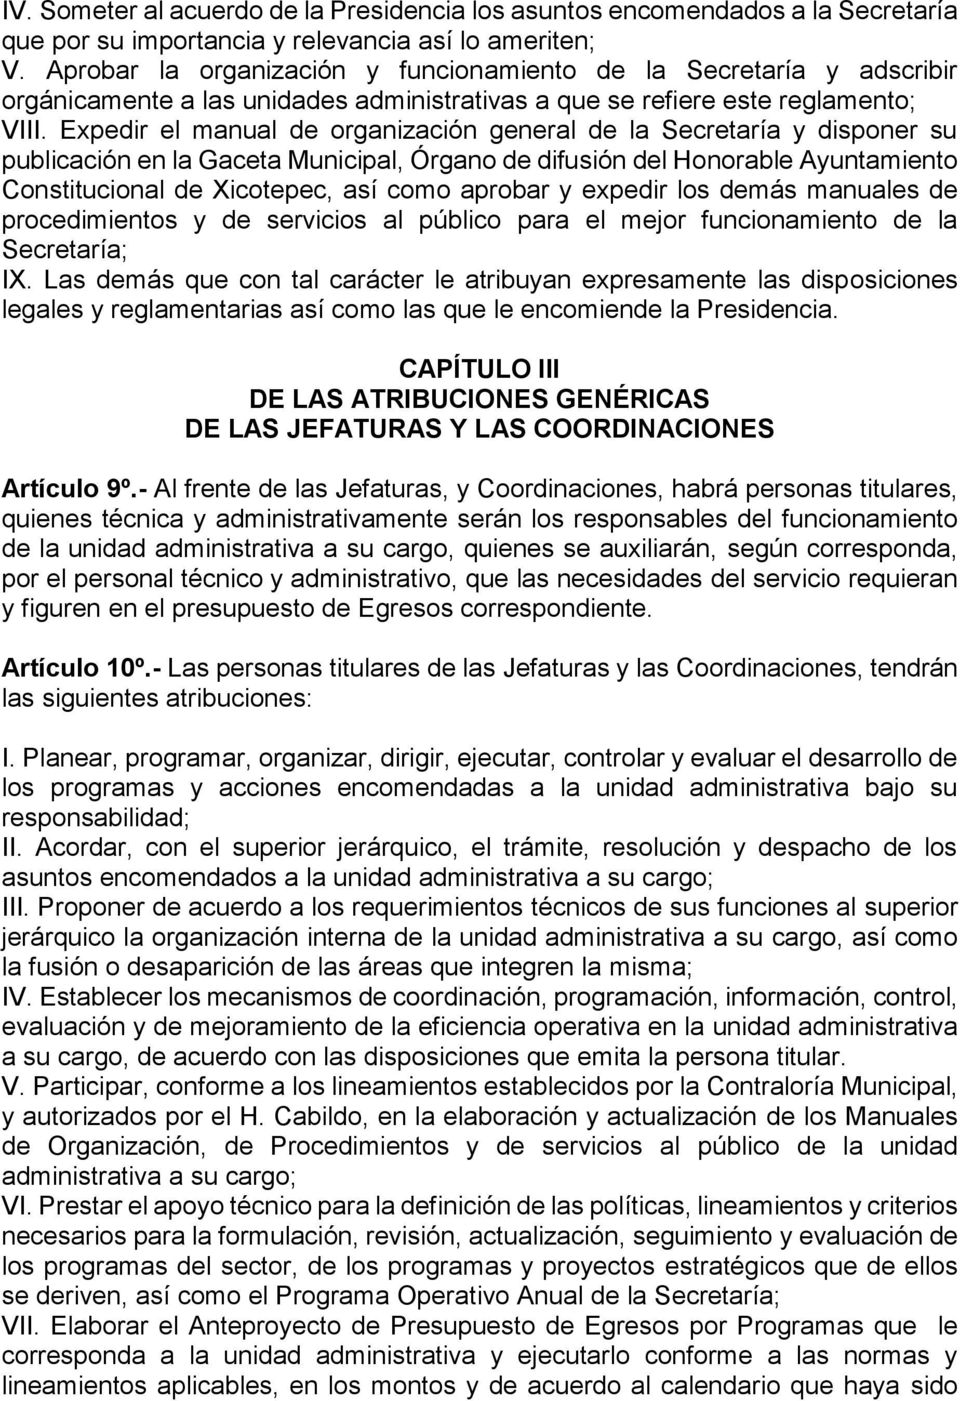 Expedir el manual de organización general de la Secretaría y disponer su publicación en la Gaceta Municipal, Órgano de difusión del Honorable Ayuntamiento Constitucional de Xicotepec, así como